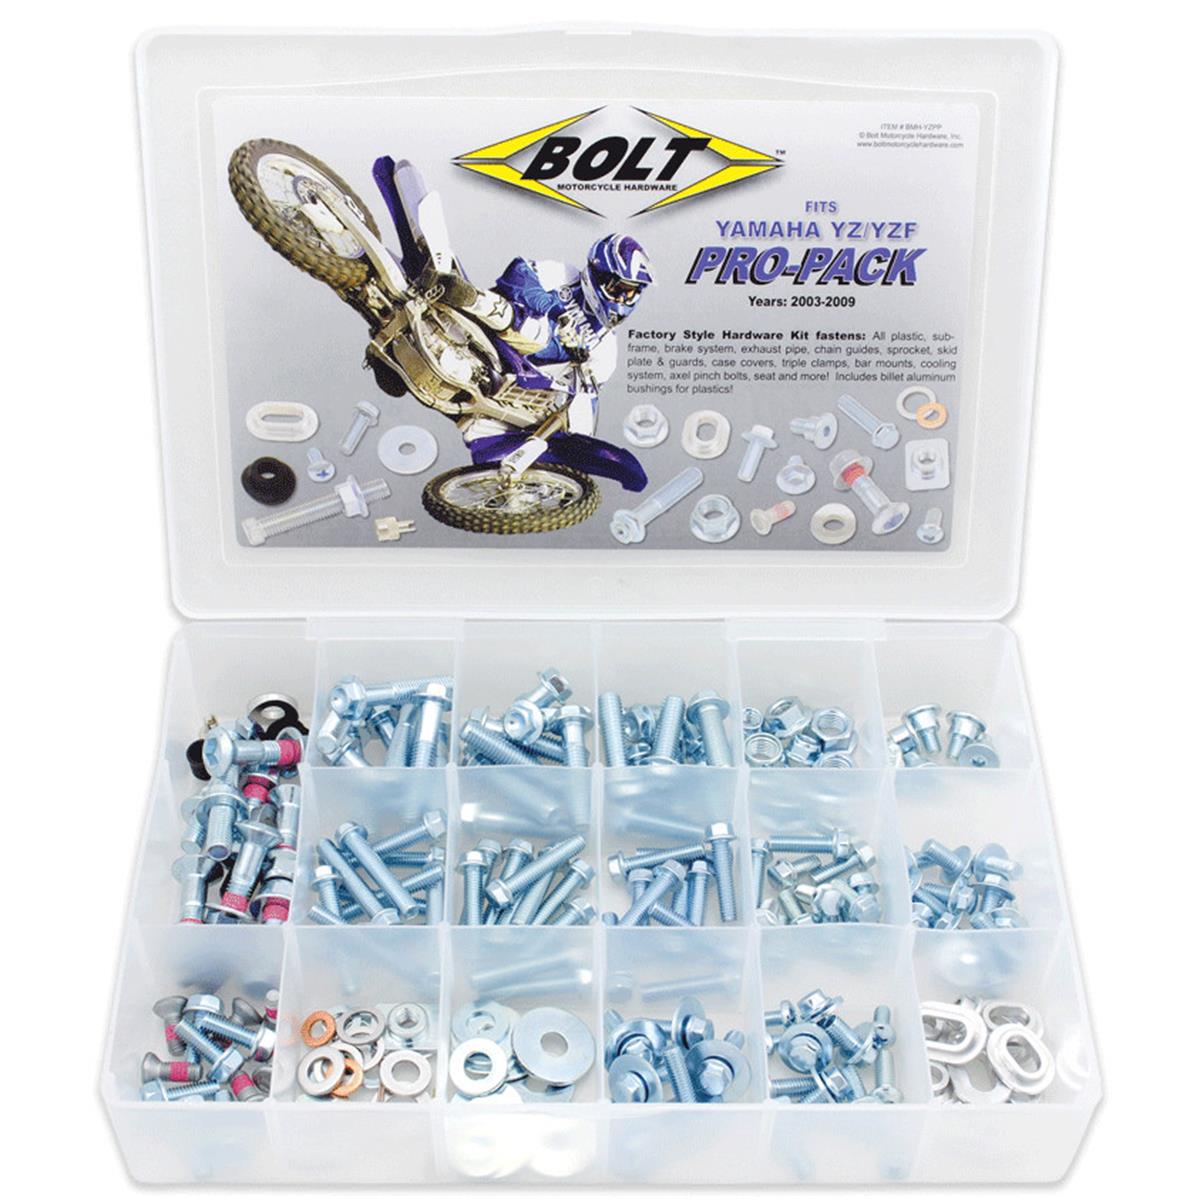 Bolt Schraubenkit Pro-Pack 190-teilig, Yamaha YZ/YZF 03-13